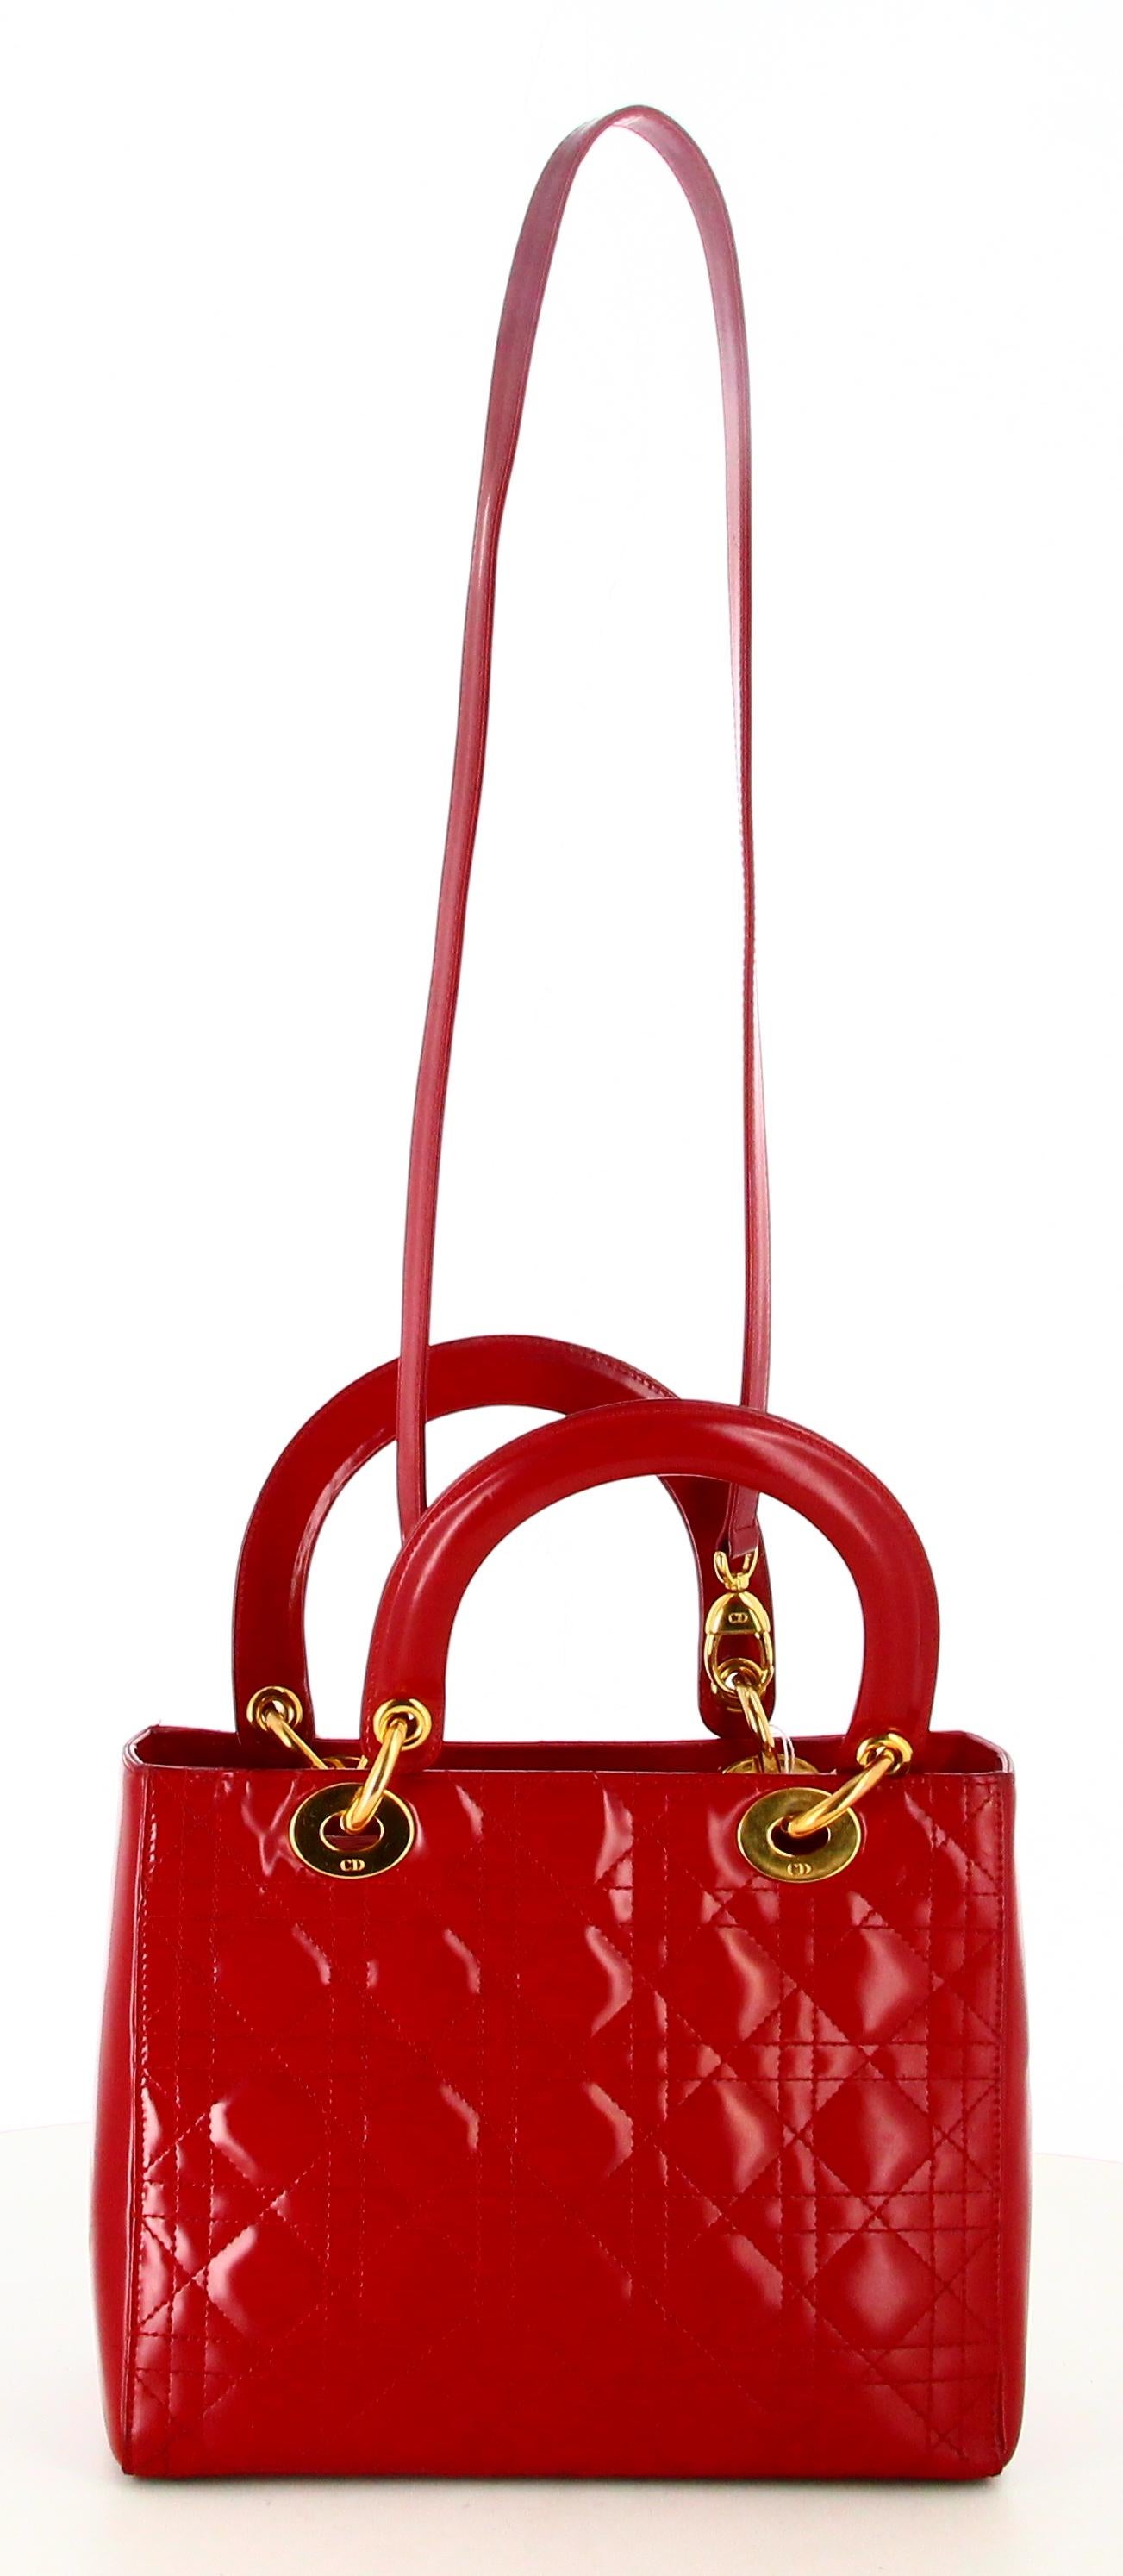 Lady Dior Medium Cannage Handbag For Sale 2